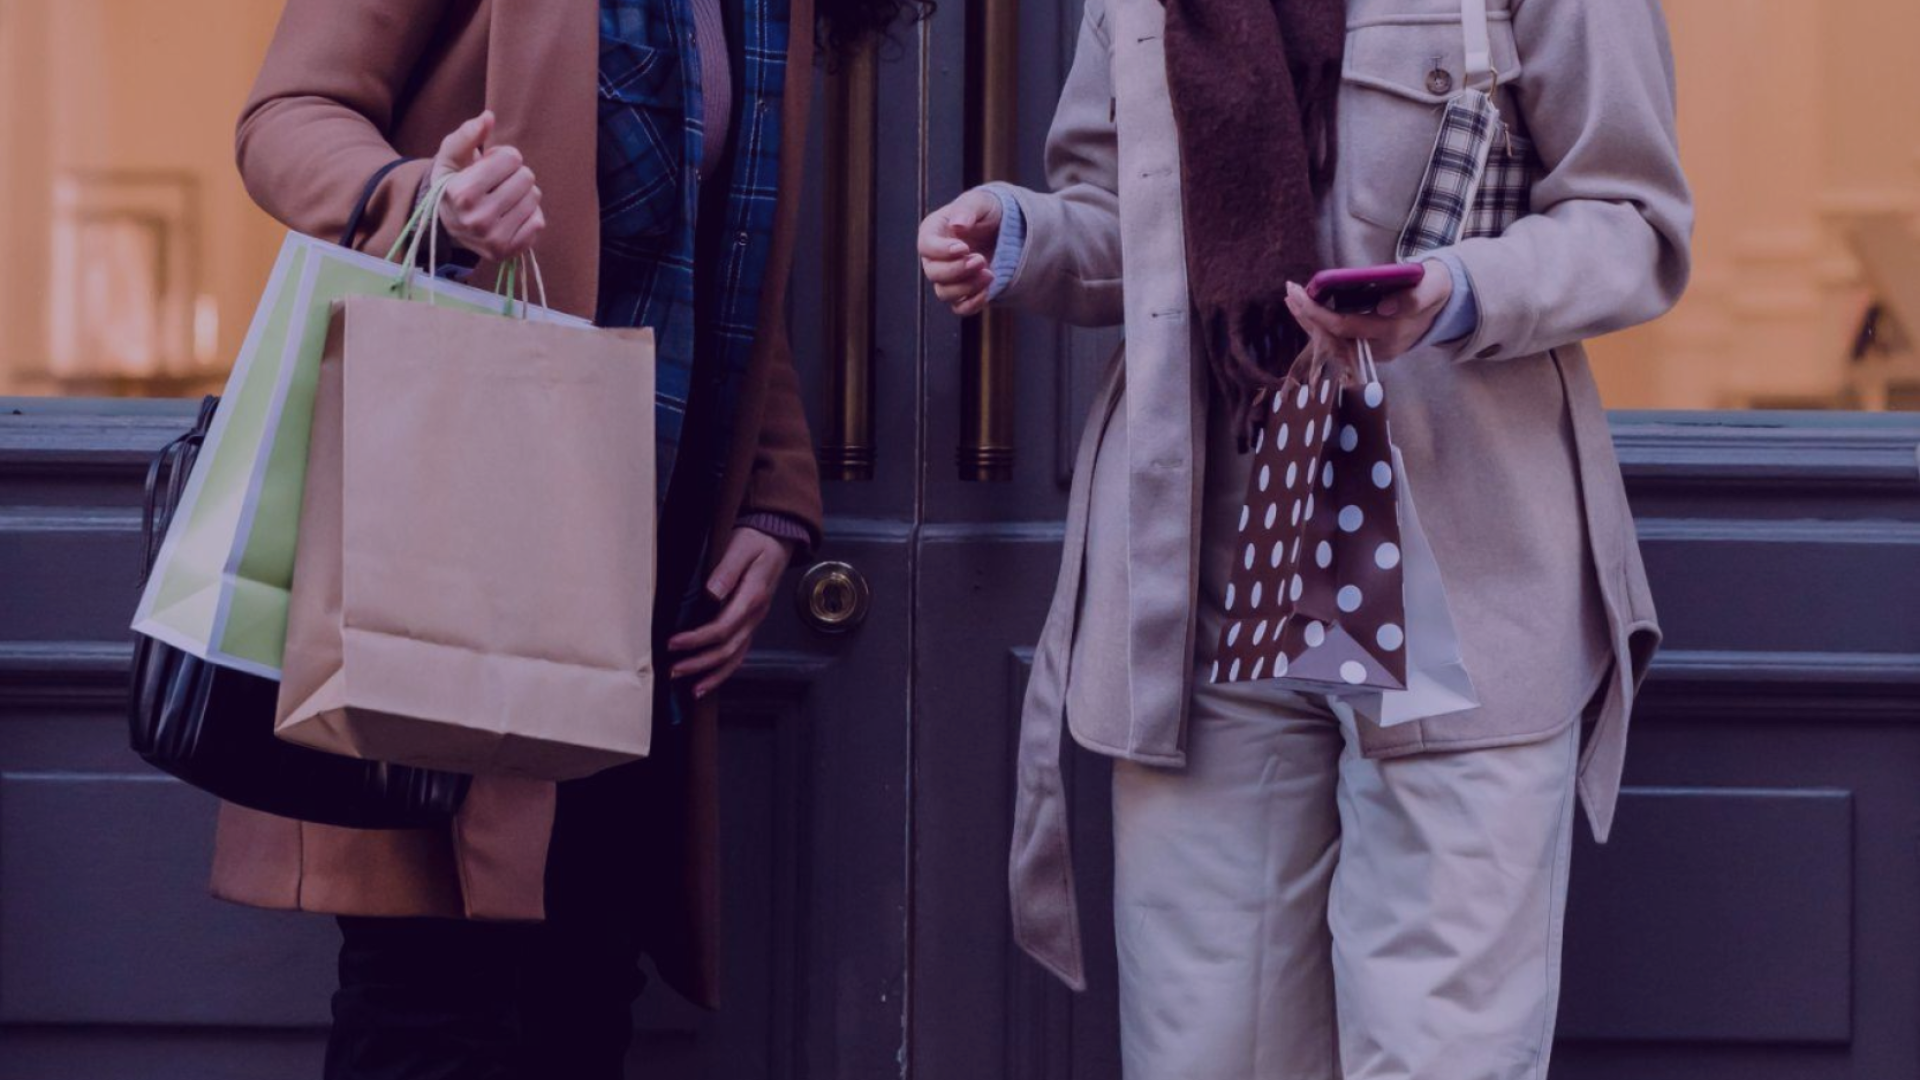 Duas mulheres com sacolas de compra e celular na mão, conversando sobre compras.